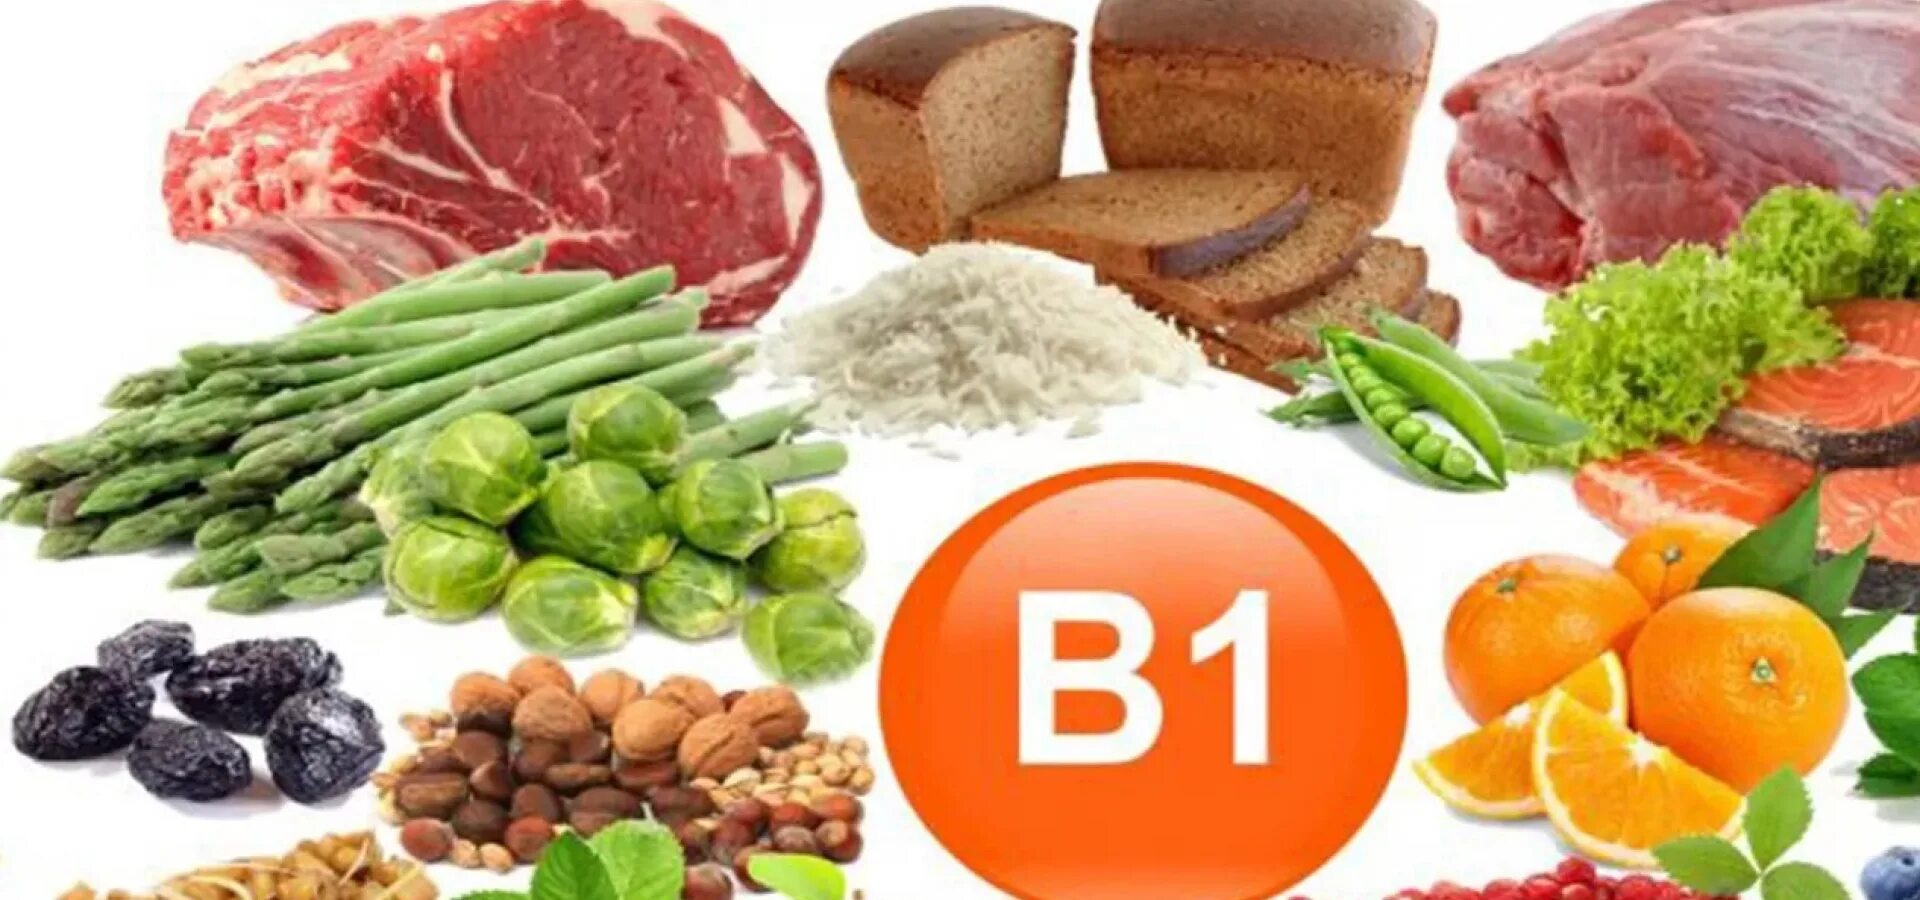 B2 b5 b6 b9. Витамин б1 тиамин. Витамин b1 тиамин. Тиамин витамин в1. Витамин b1 тиамин источники.